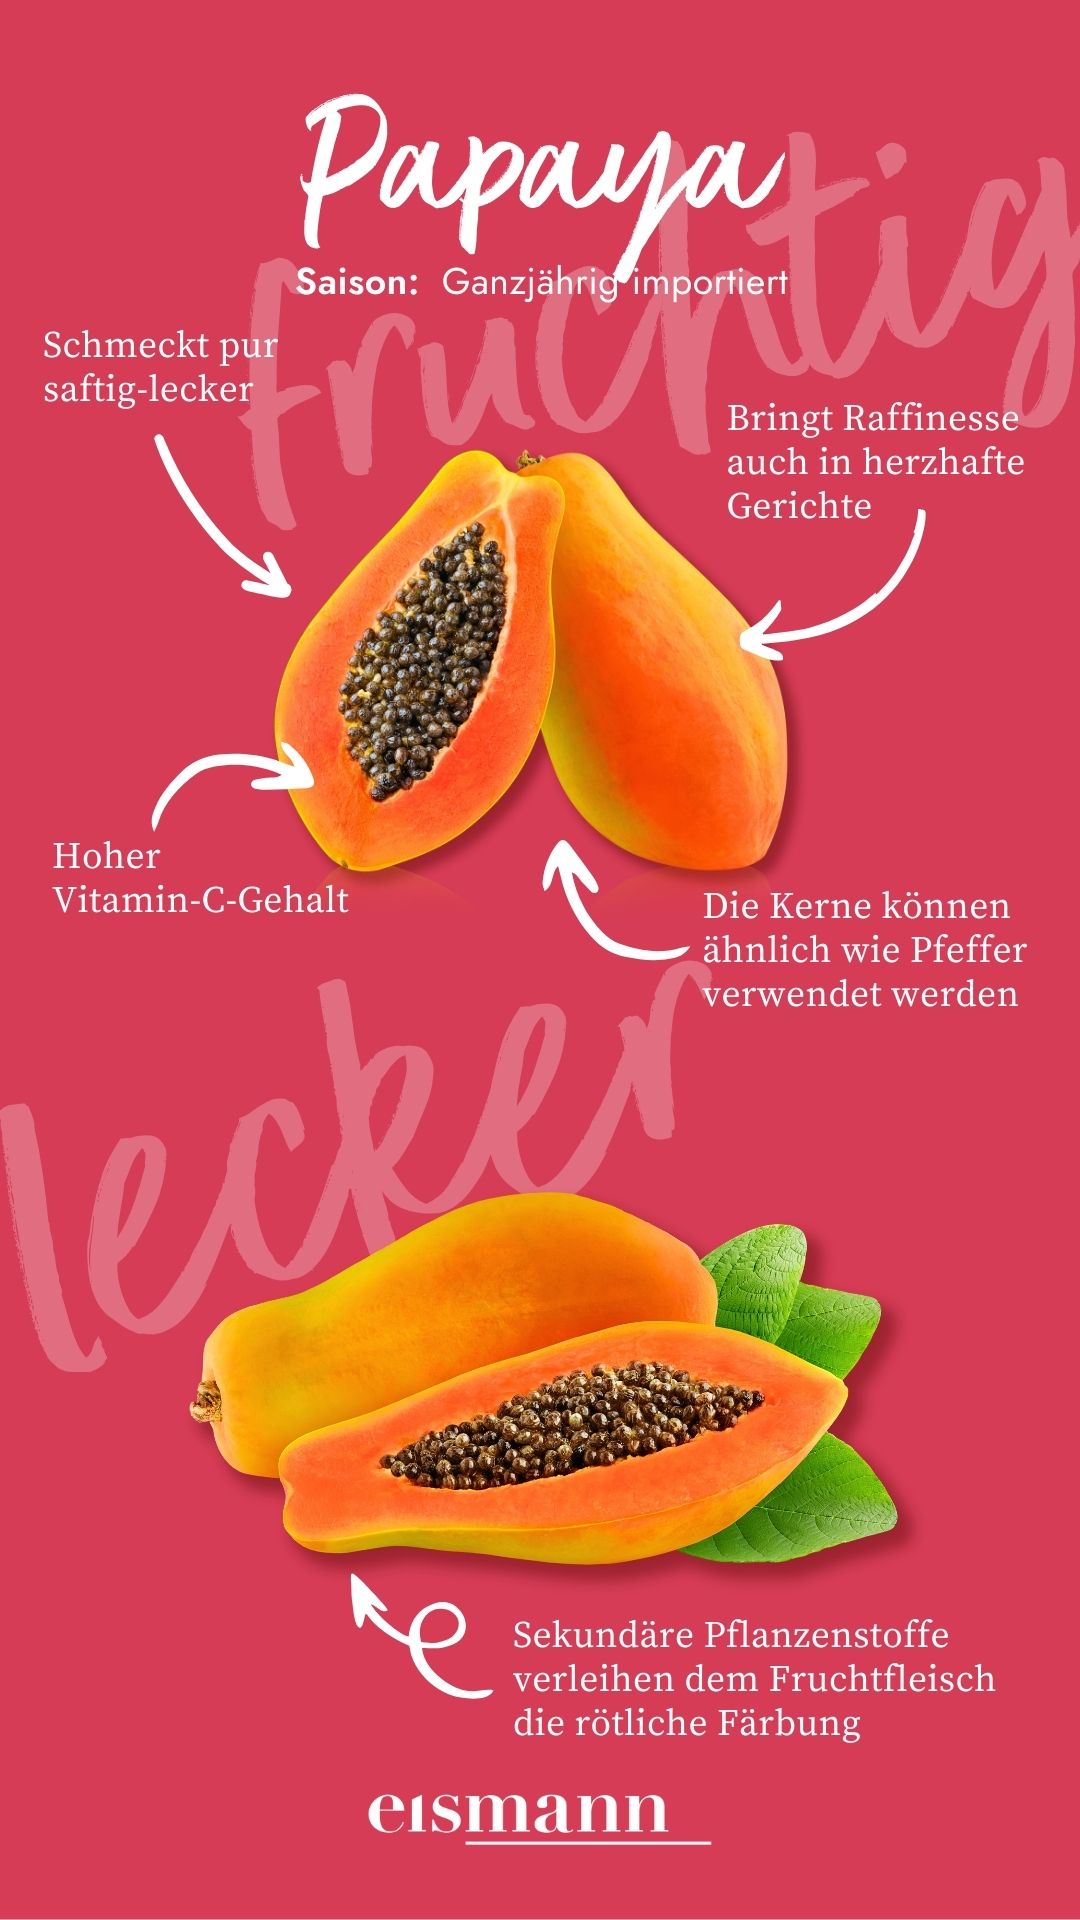 Papaya - Eigenschaften, Saison und Vorteile in der Ernährung